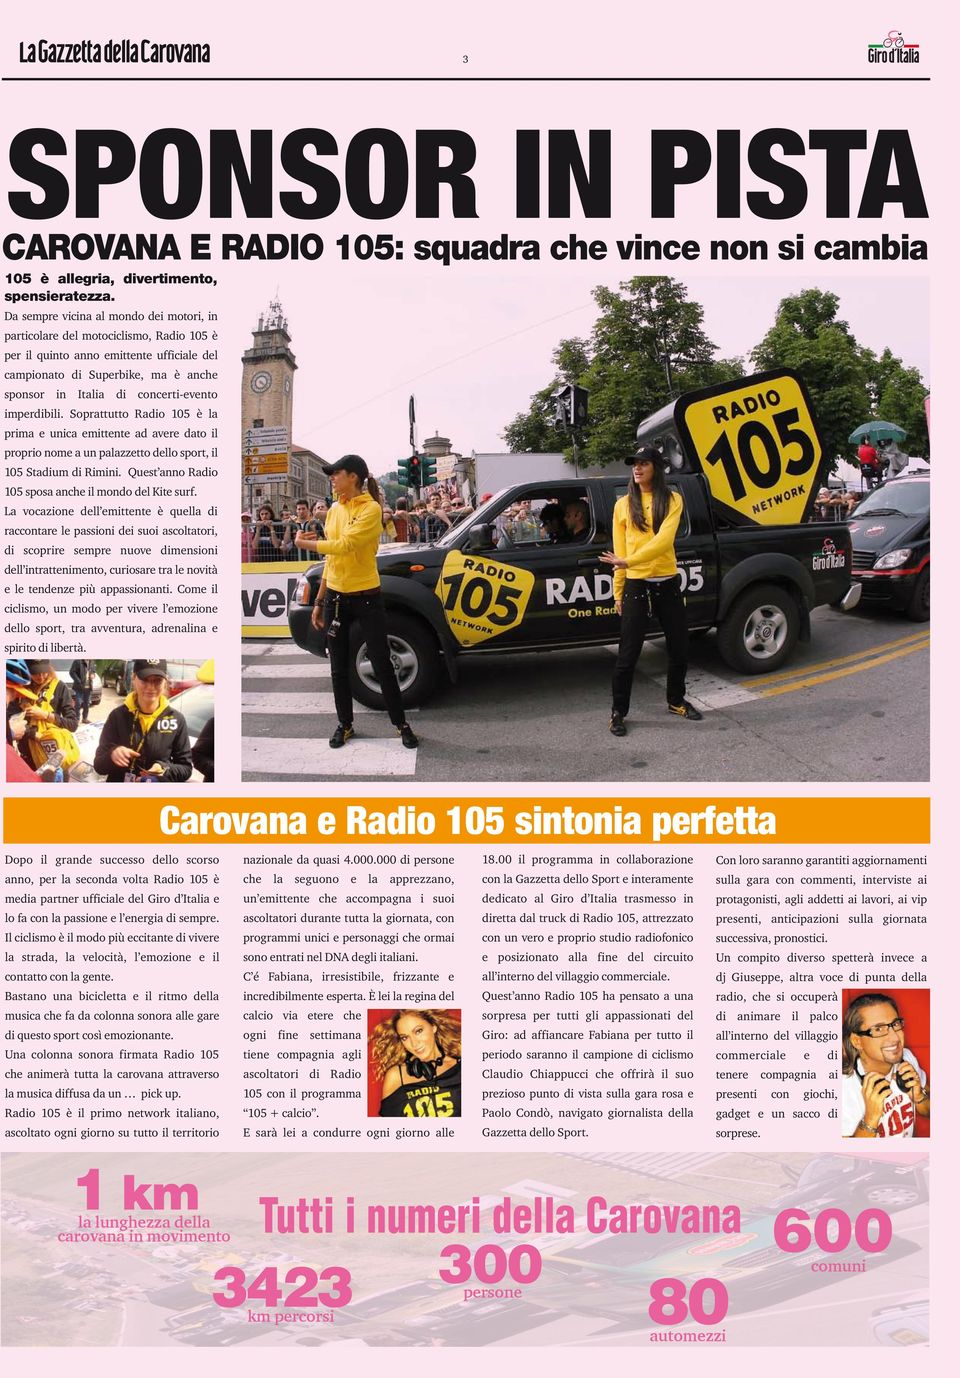 imperdibili. Soprattutto Radio 105 è la prima e unica emittente ad avere dato il proprio nome a un palazzetto dello sport, il 105 Stadium di Rimini.